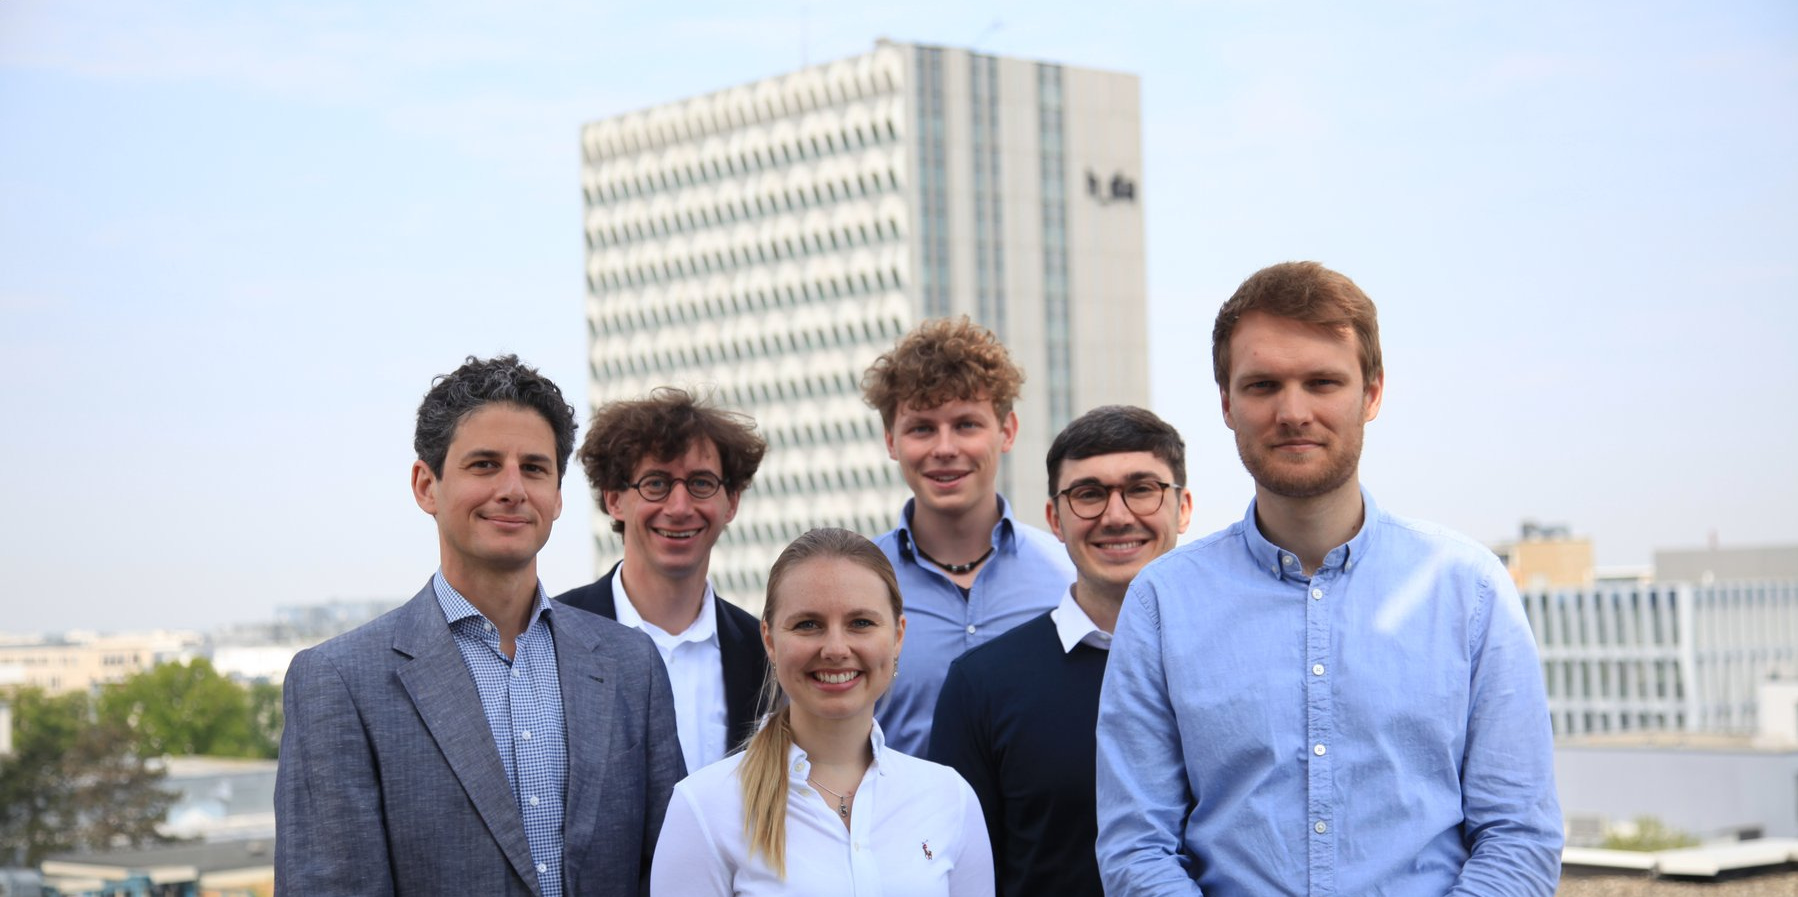 Gruppenfoto des daFNE-Teams vor dem Hochhaus der Hochschule Darmstadt